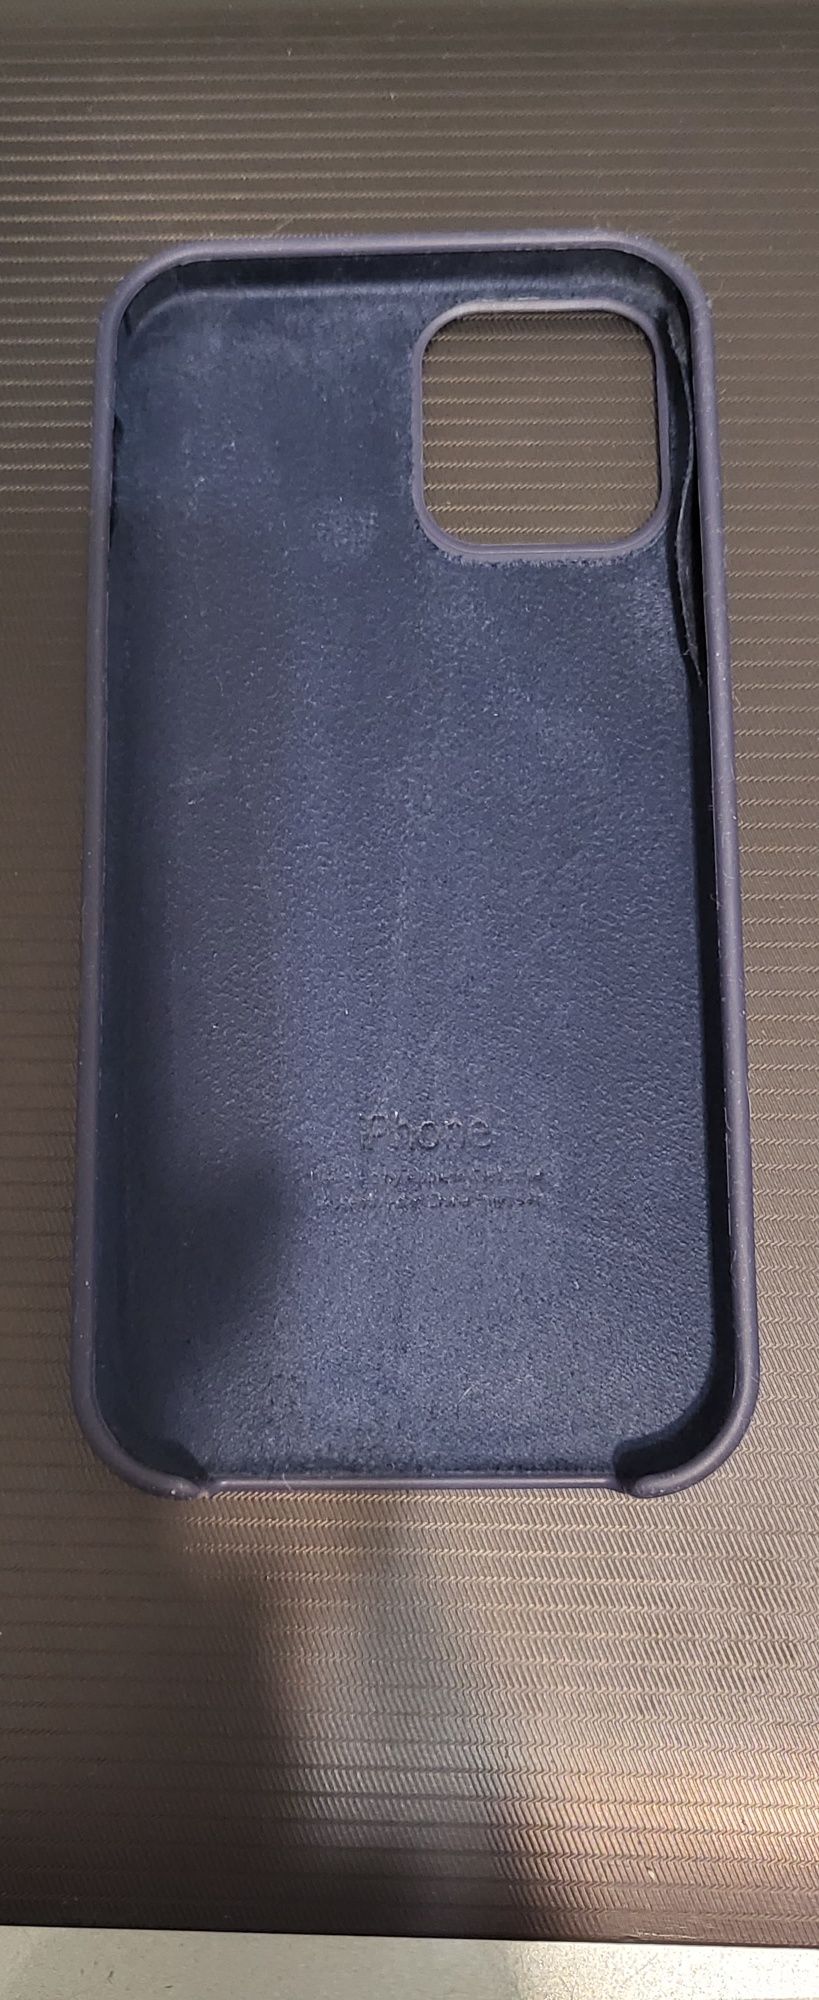 Чехол на IPhone 12 Pro Silicone Case